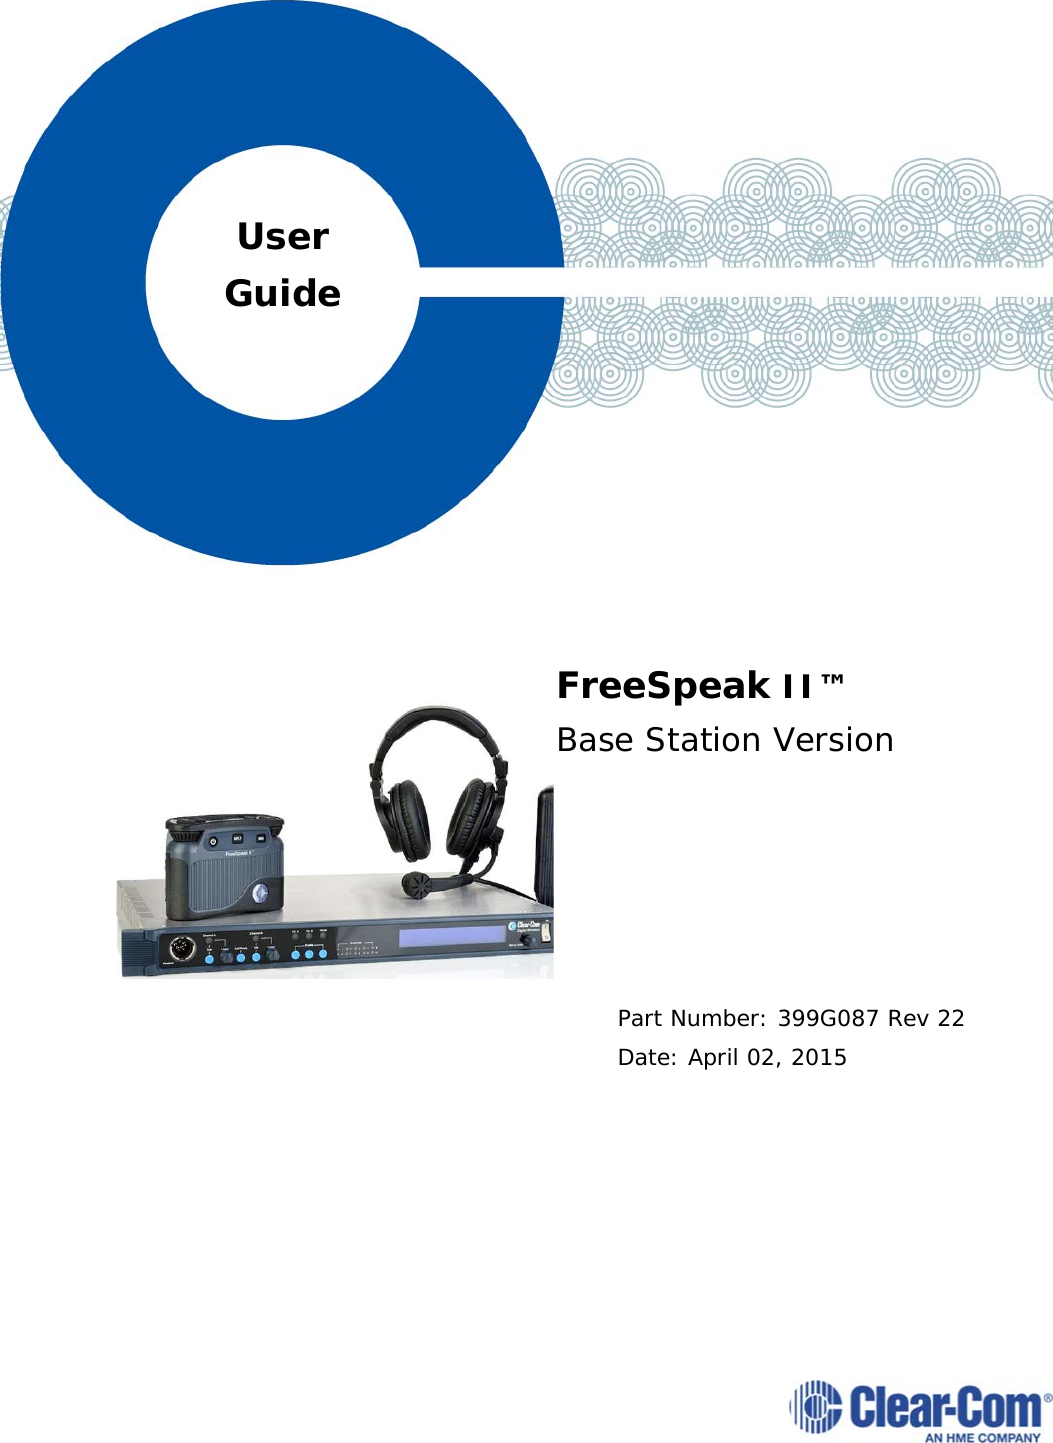                FreeSpeak II™  Base Station Version       Part Number: 399G087 Rev 22 Date: April 02, 2015 User Guide 